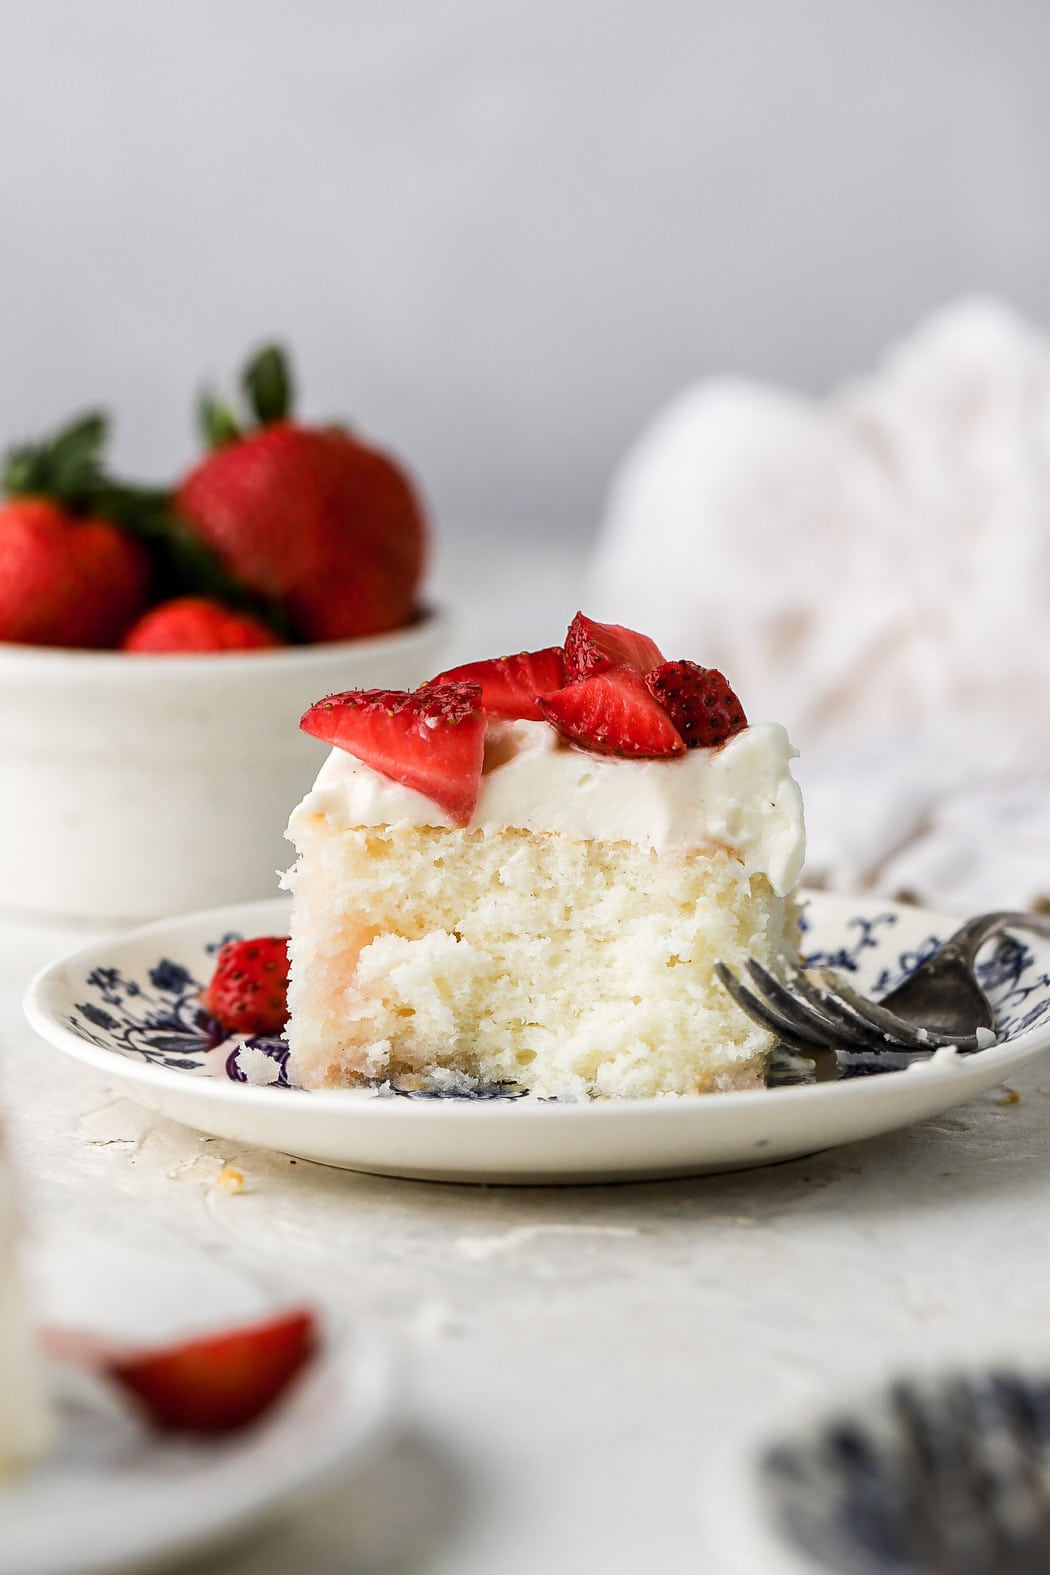 strawberry vanilla cake with fresh strawberries